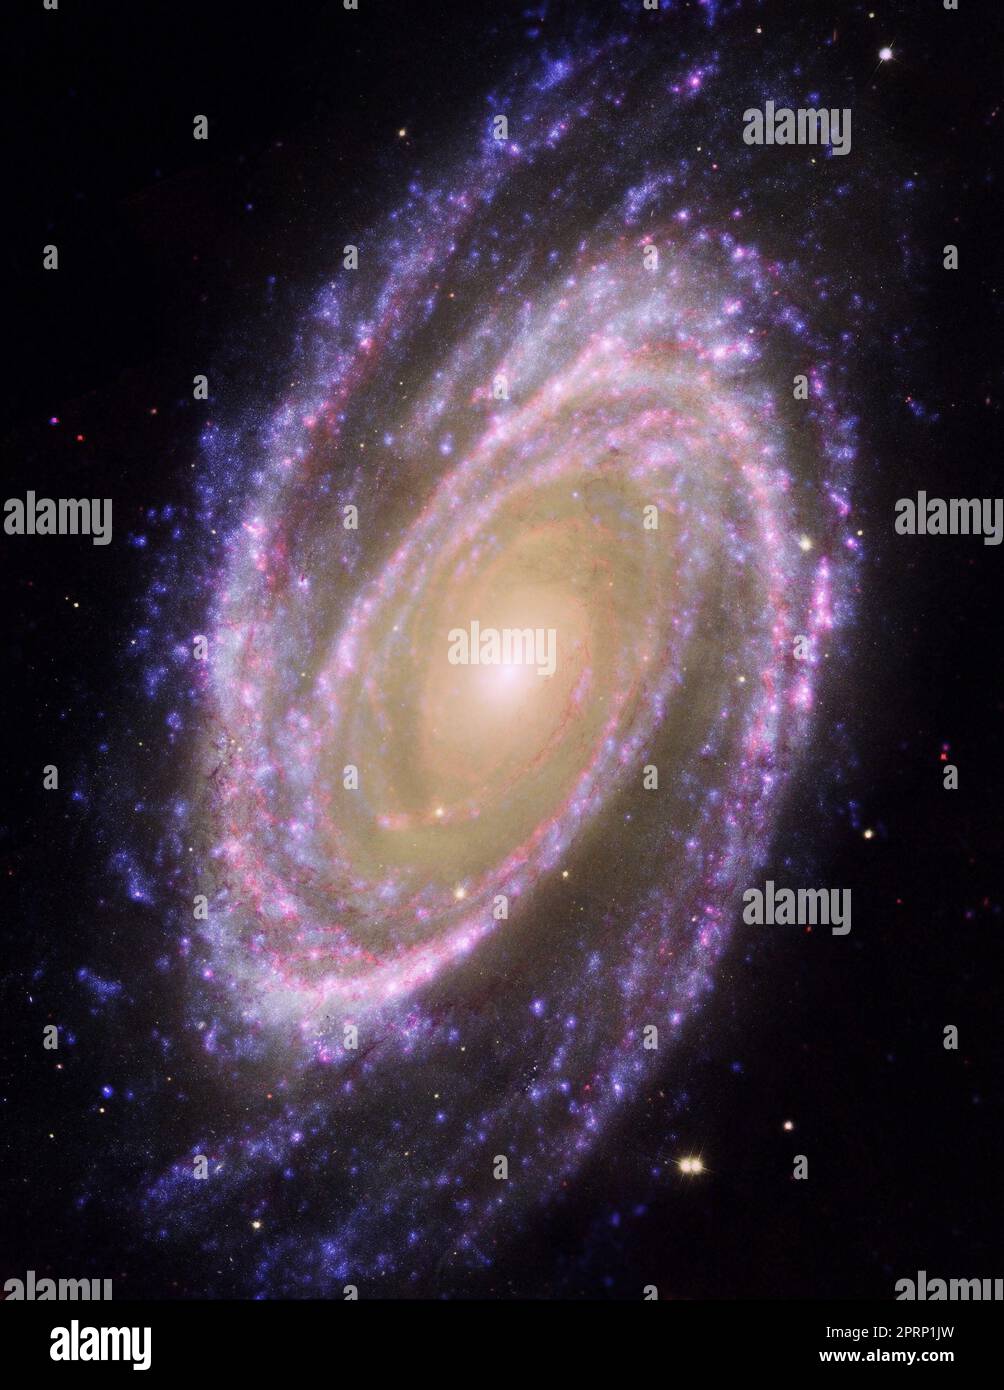 Galaxie, Himmel und nasa Weltraumtechnologie Wissenschaft mit Sternen, Staub und Sternenhaufen des Universums in unendlich am Himmel. Nebel-Licht, Sonnensystem und Milchweg-Planeten in Beauty-Kosmos-Satellit von JWST Stockfoto